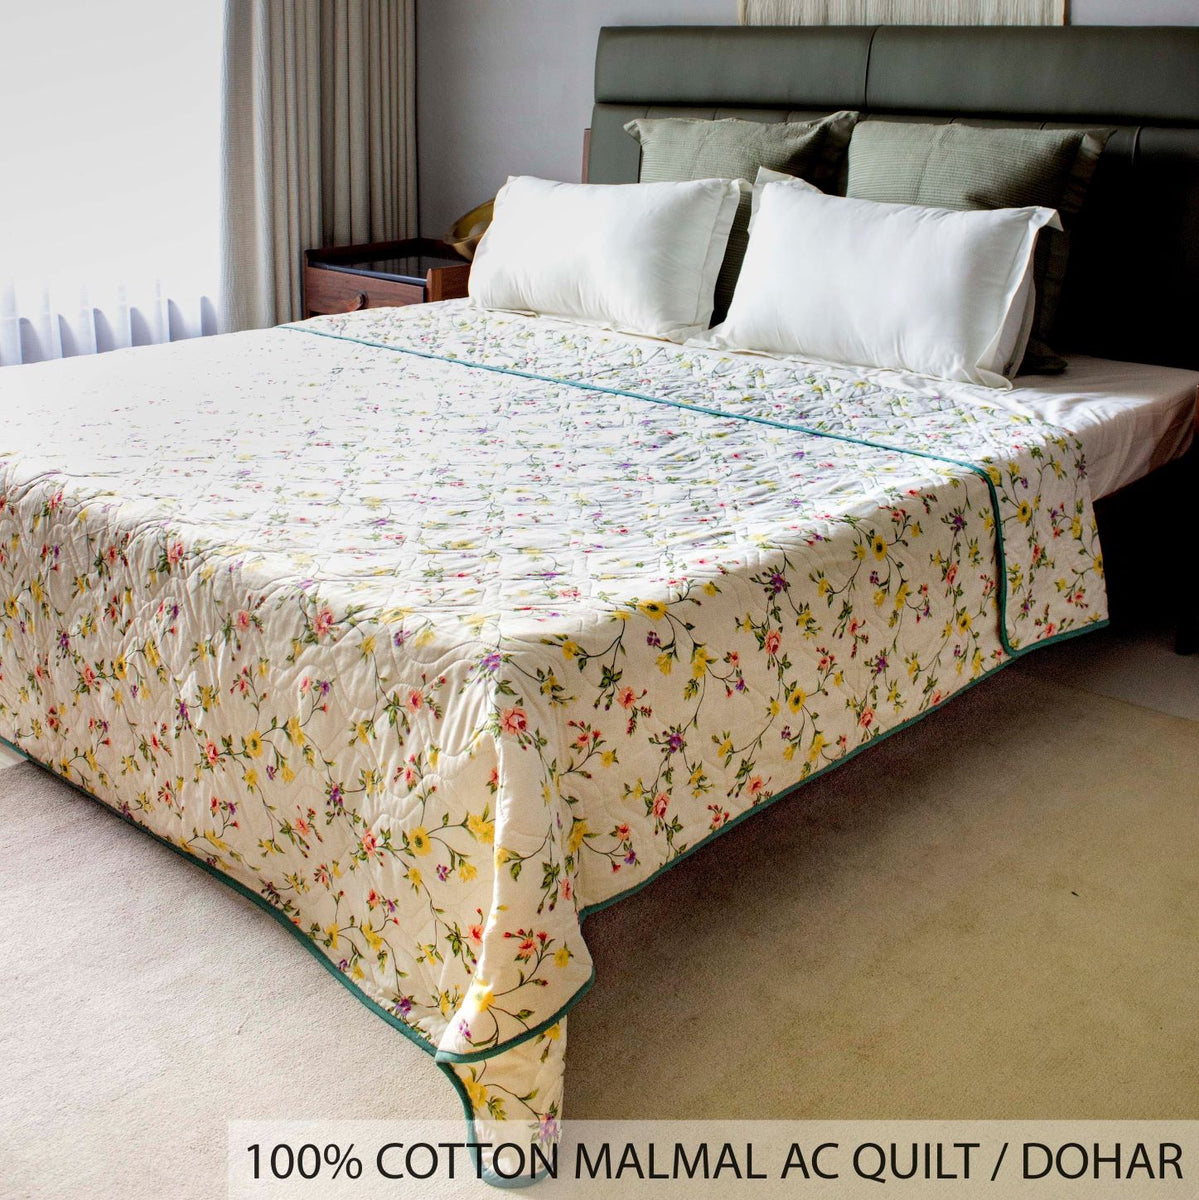 100% Cotton Malmal Blanket, Dohar, Comforter / Quilt - Floral